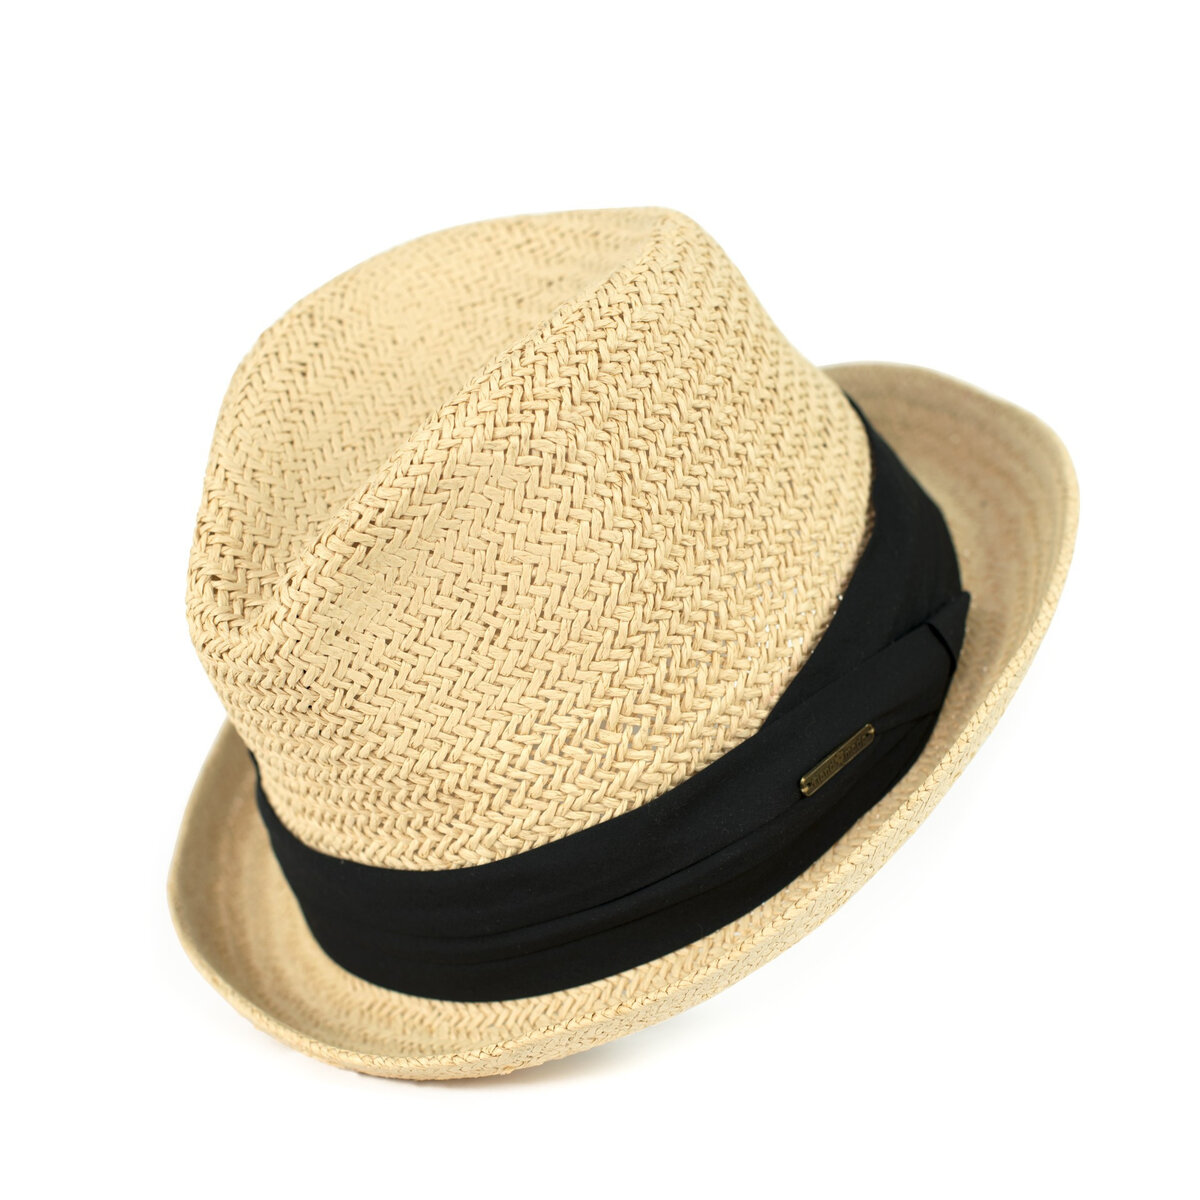 Letní trilby klobouk z přírodních materiálů - Art of Polo, světle béžová UNI i10_P63085_1:779_2:443_